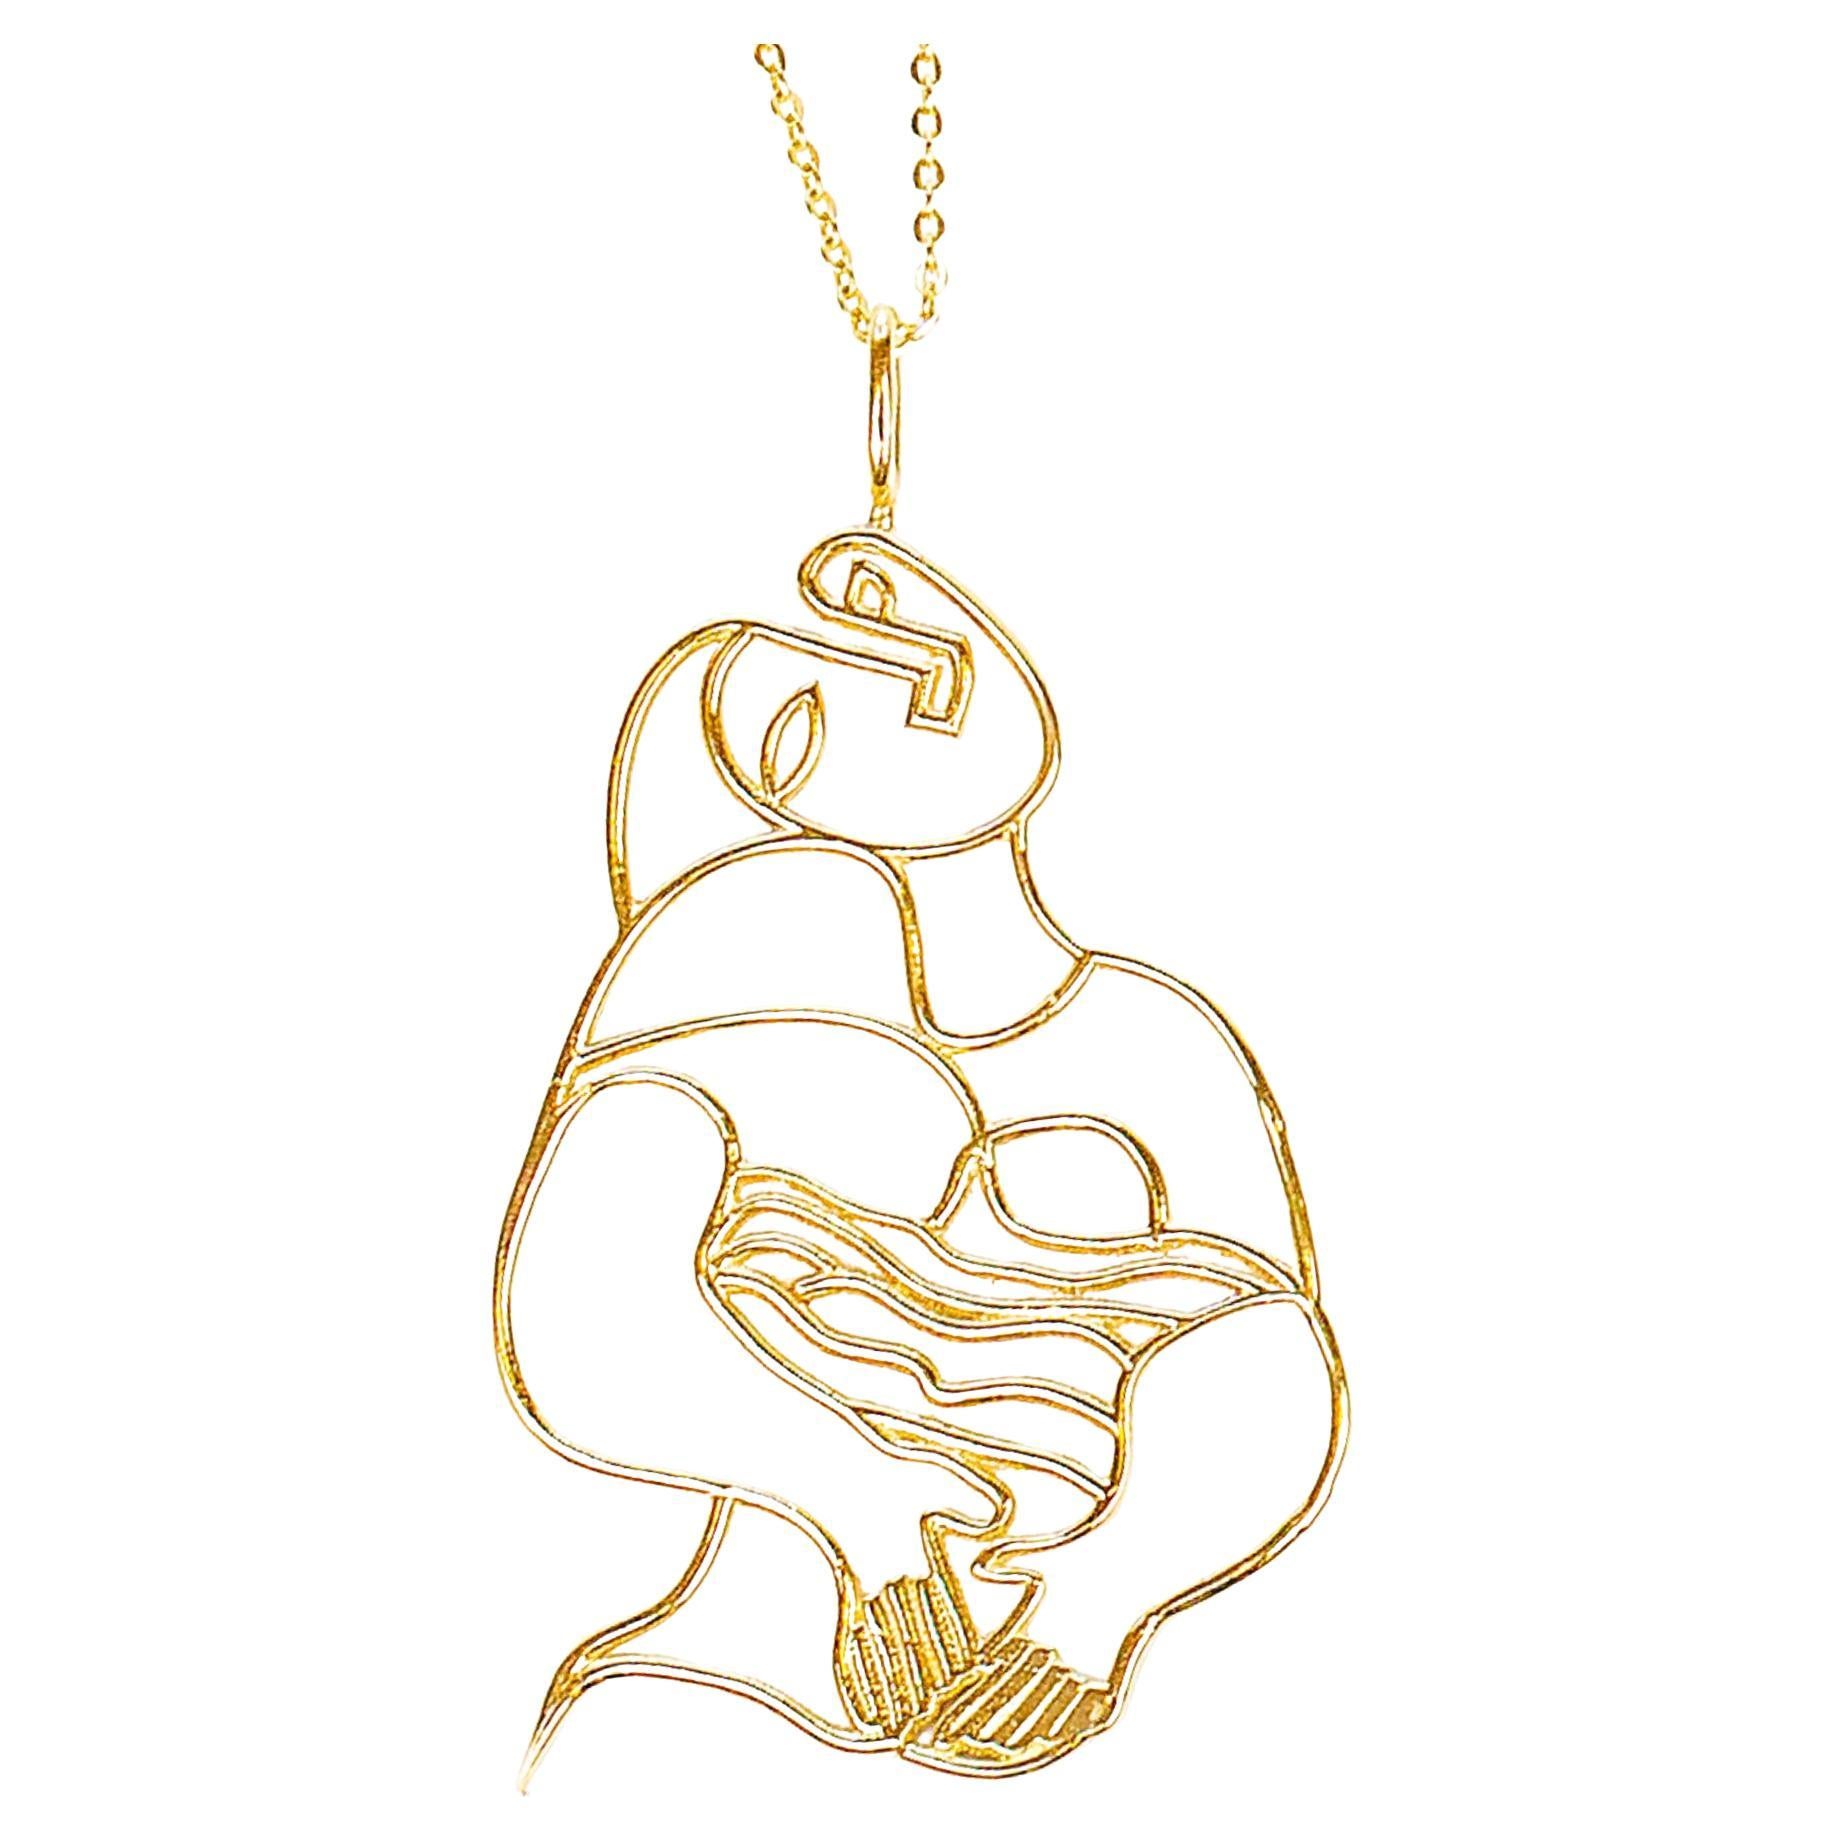 Collier à breloques en or 14 carats représentant une femme rêveuse, inspiré de « La Réveille » de Pablo Picasso